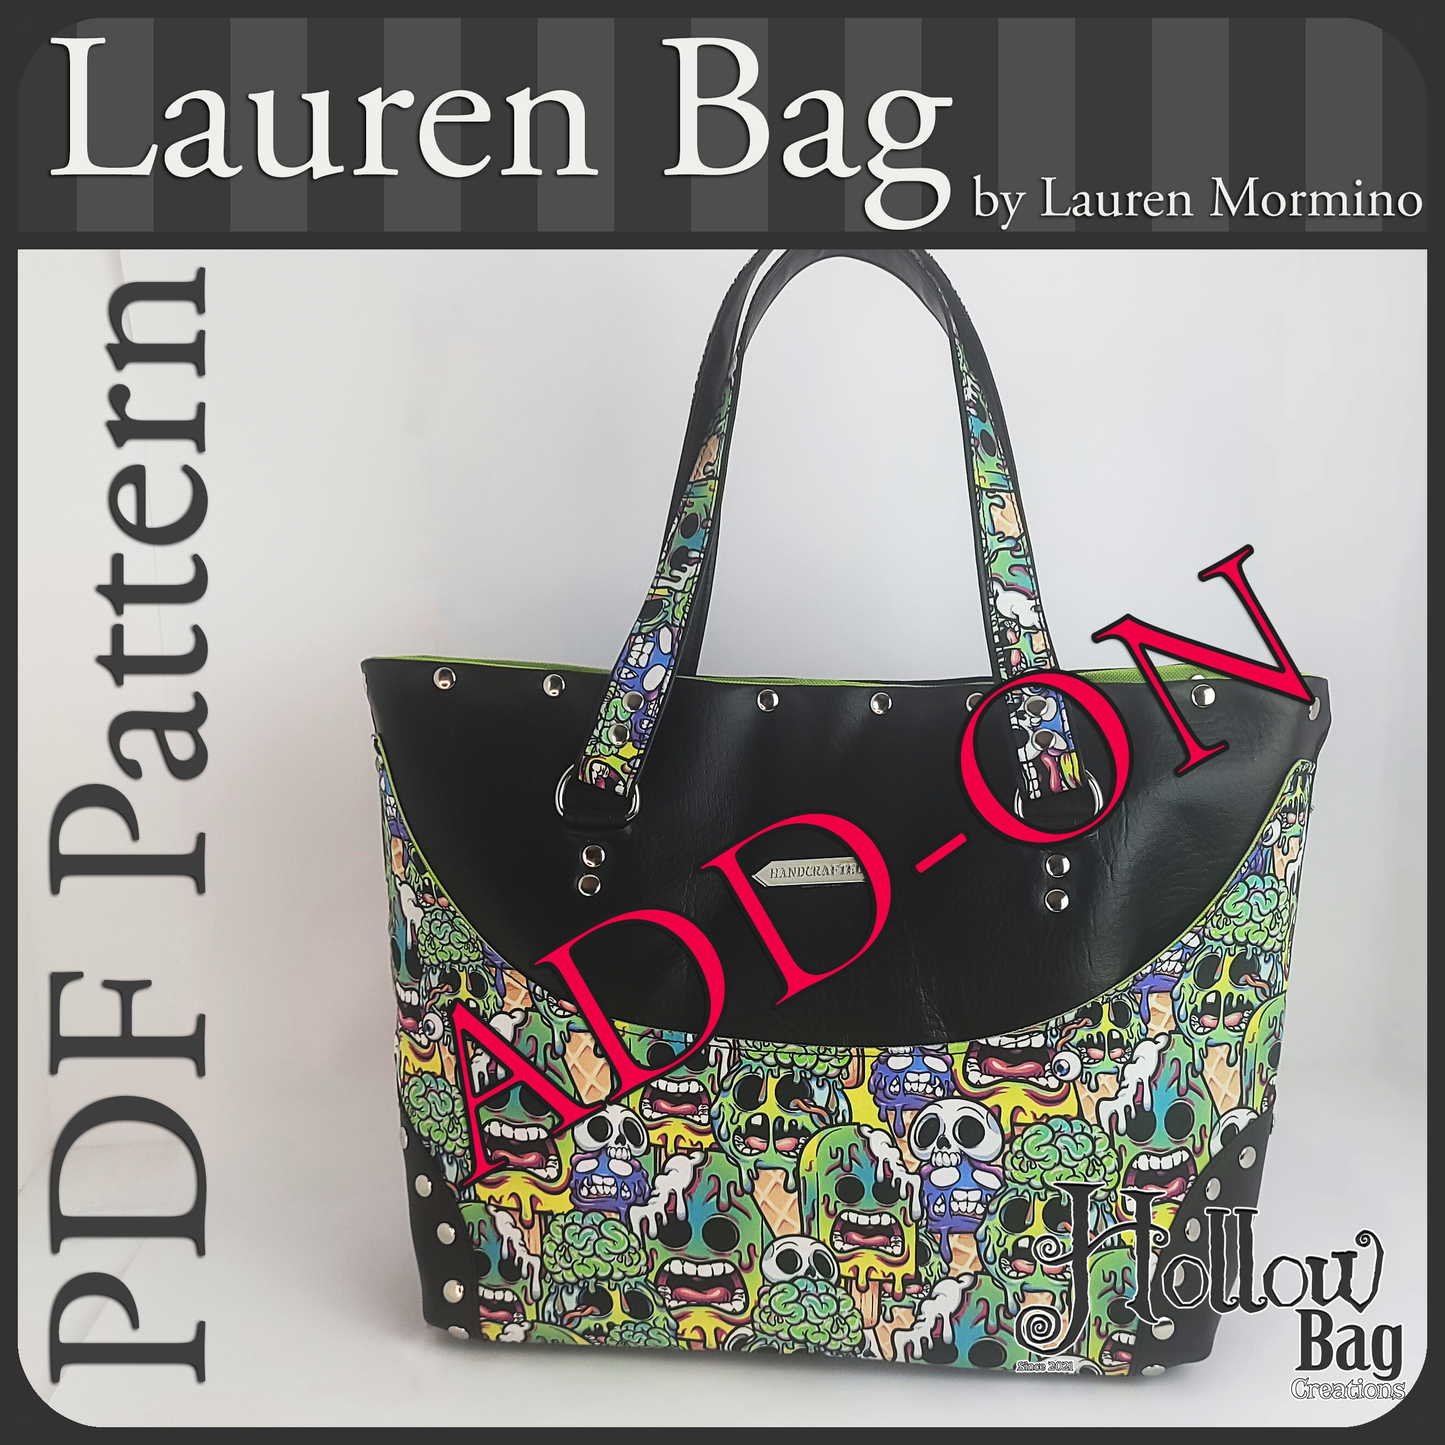 Pattern - Lauren Bag Add-on